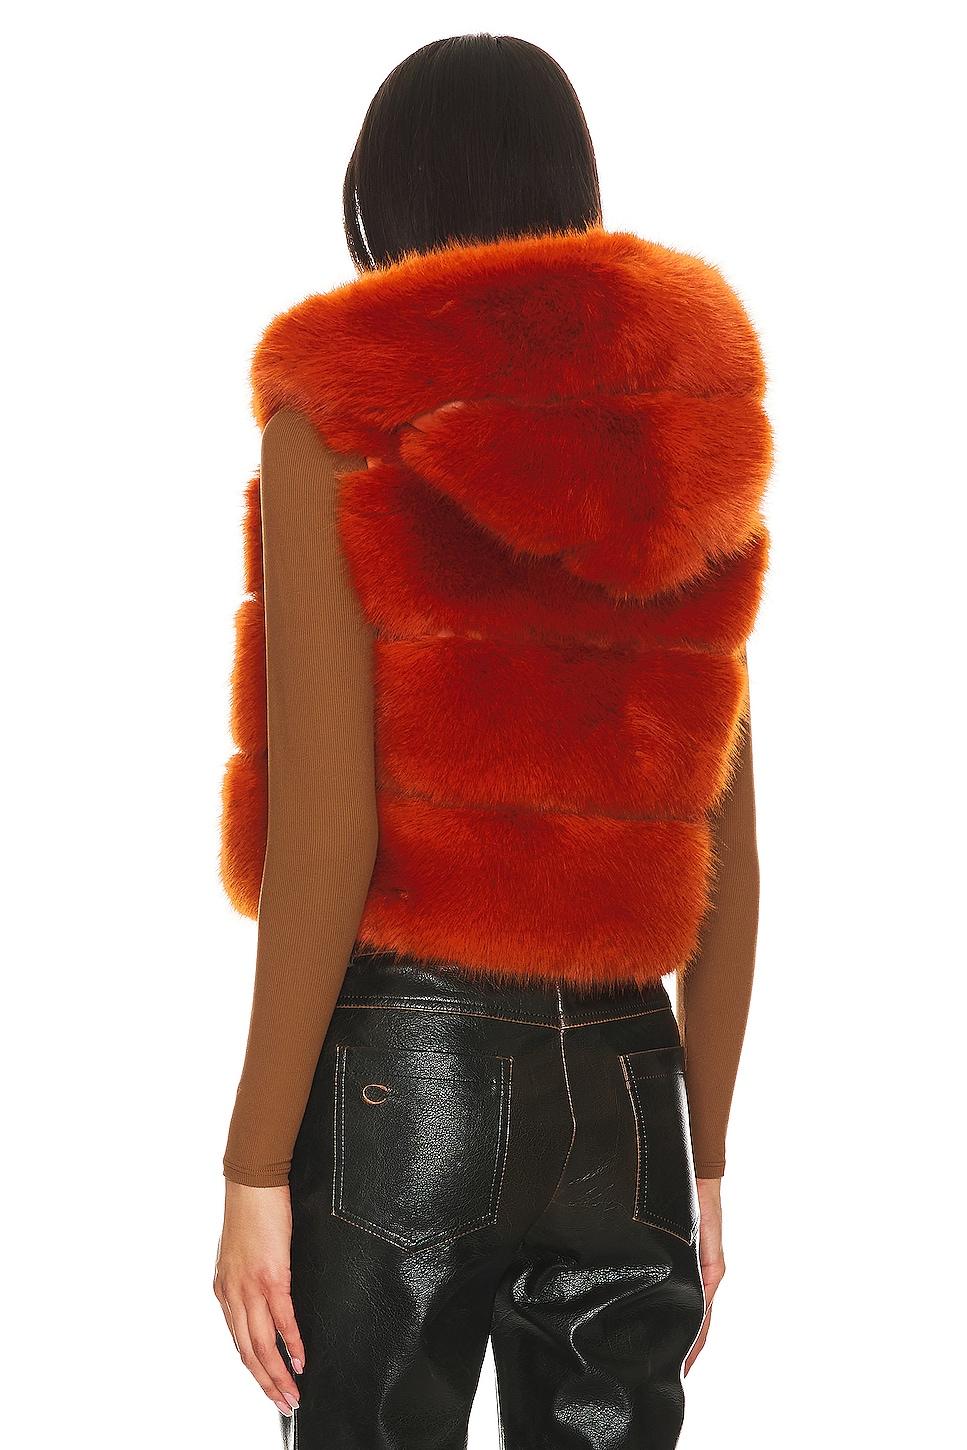 Adrienne Landau Faux Fur Hooded Vest in Red | Lyst